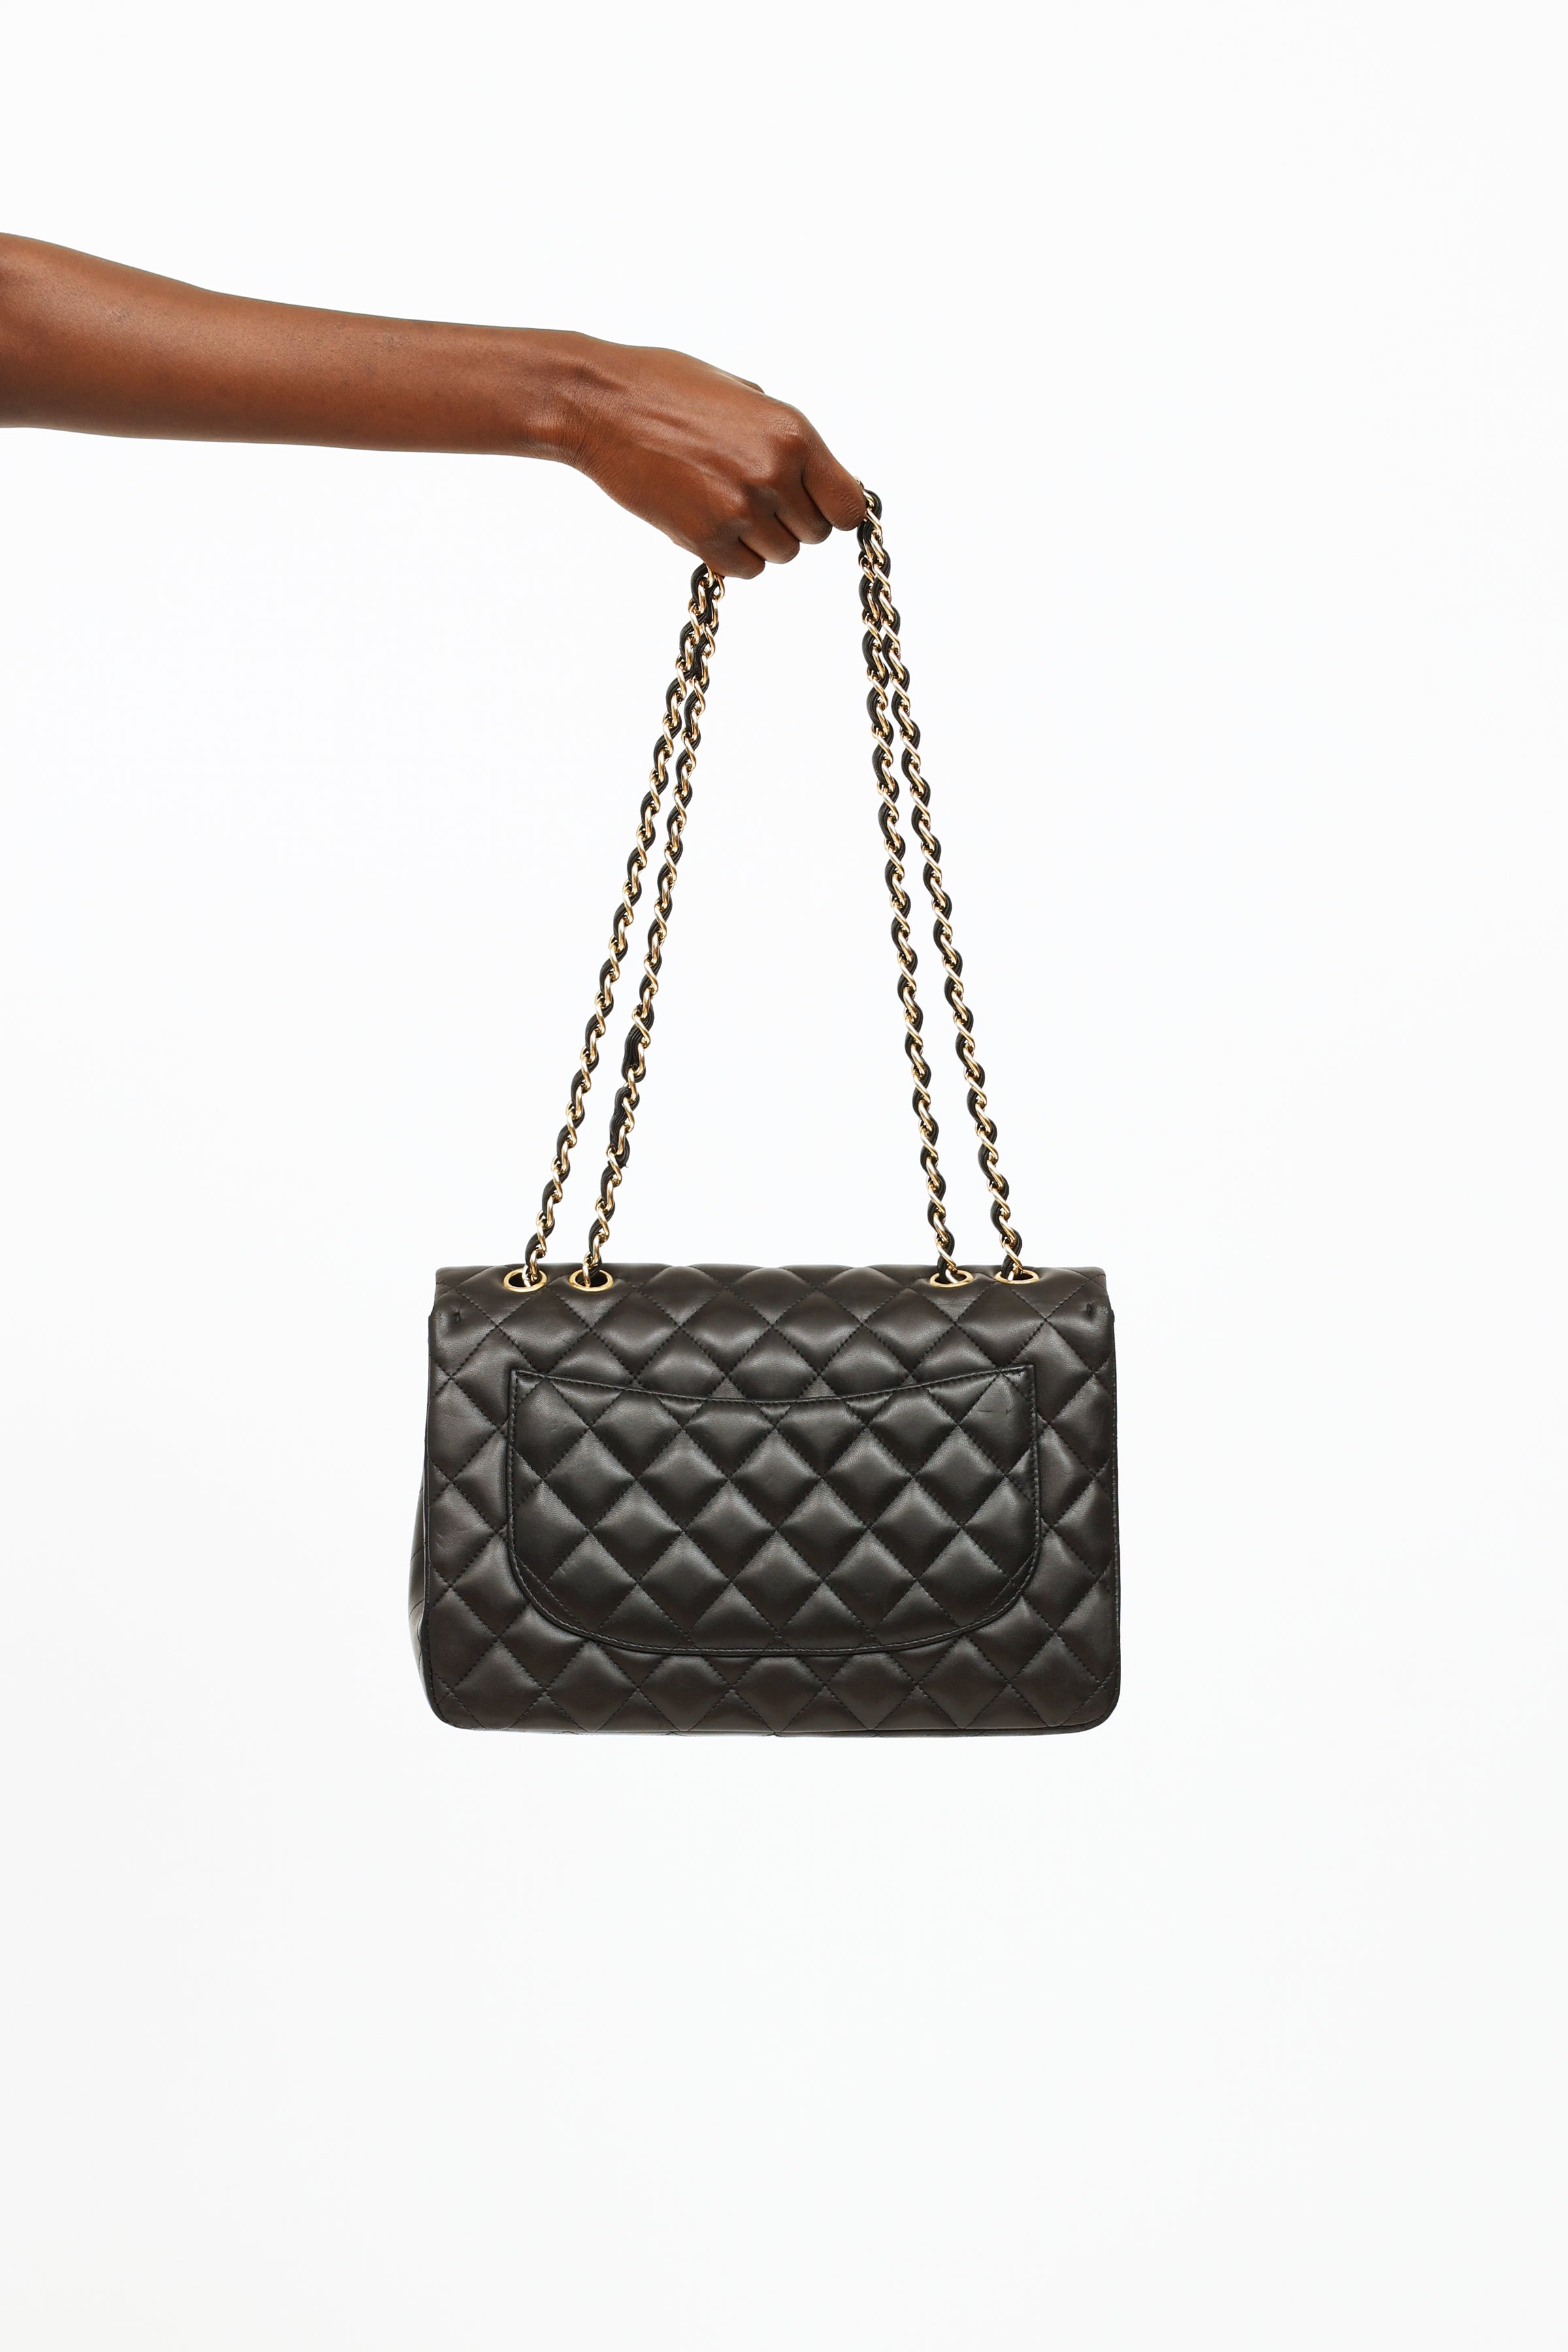 CHANEL Bag Shoulder bag Black Leather Matelasse CC logo